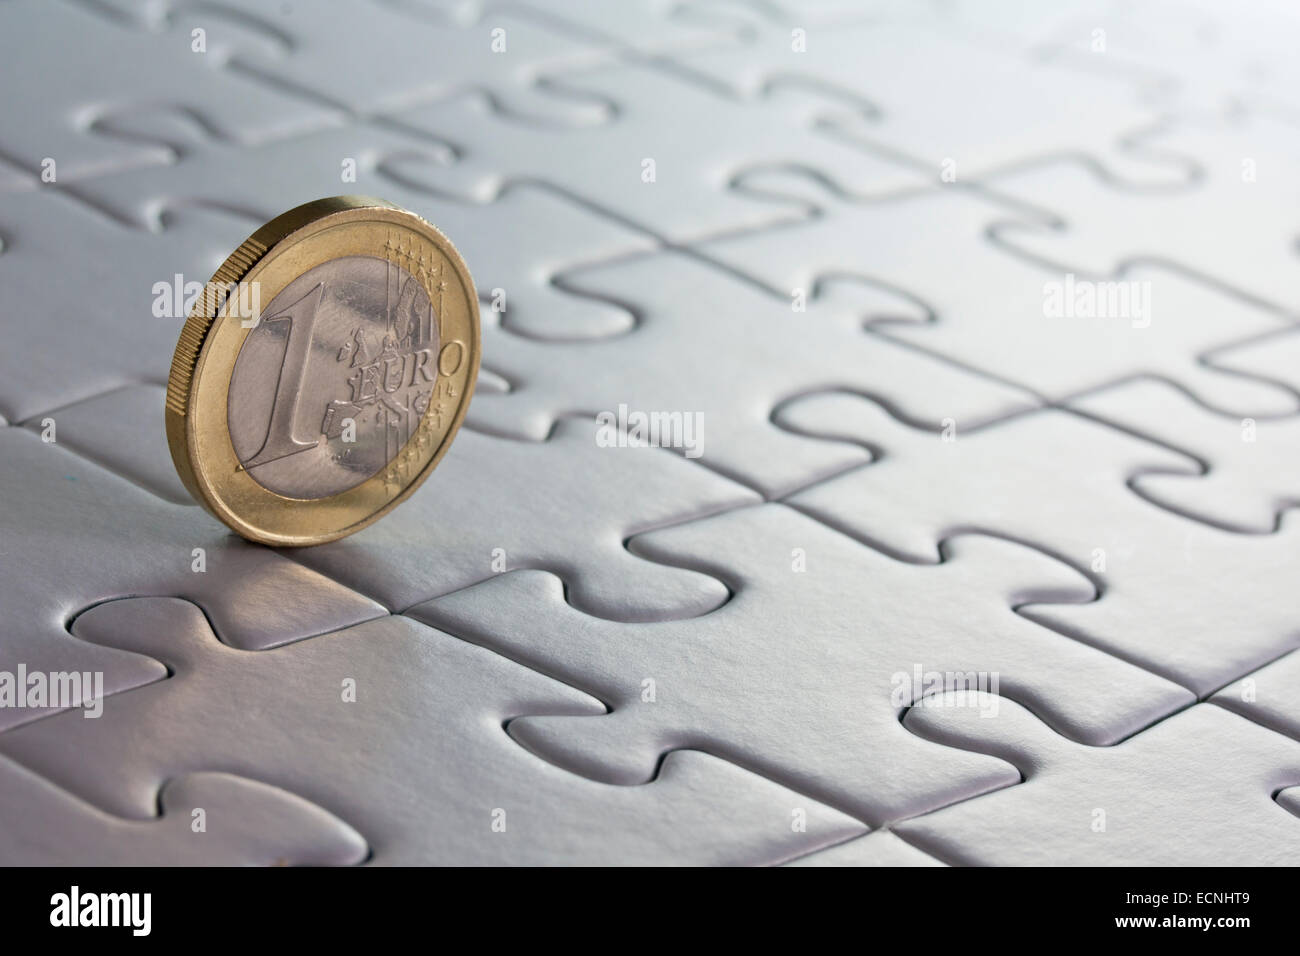 1 pièce en euros sur un casse-puzzle Banque D'Images